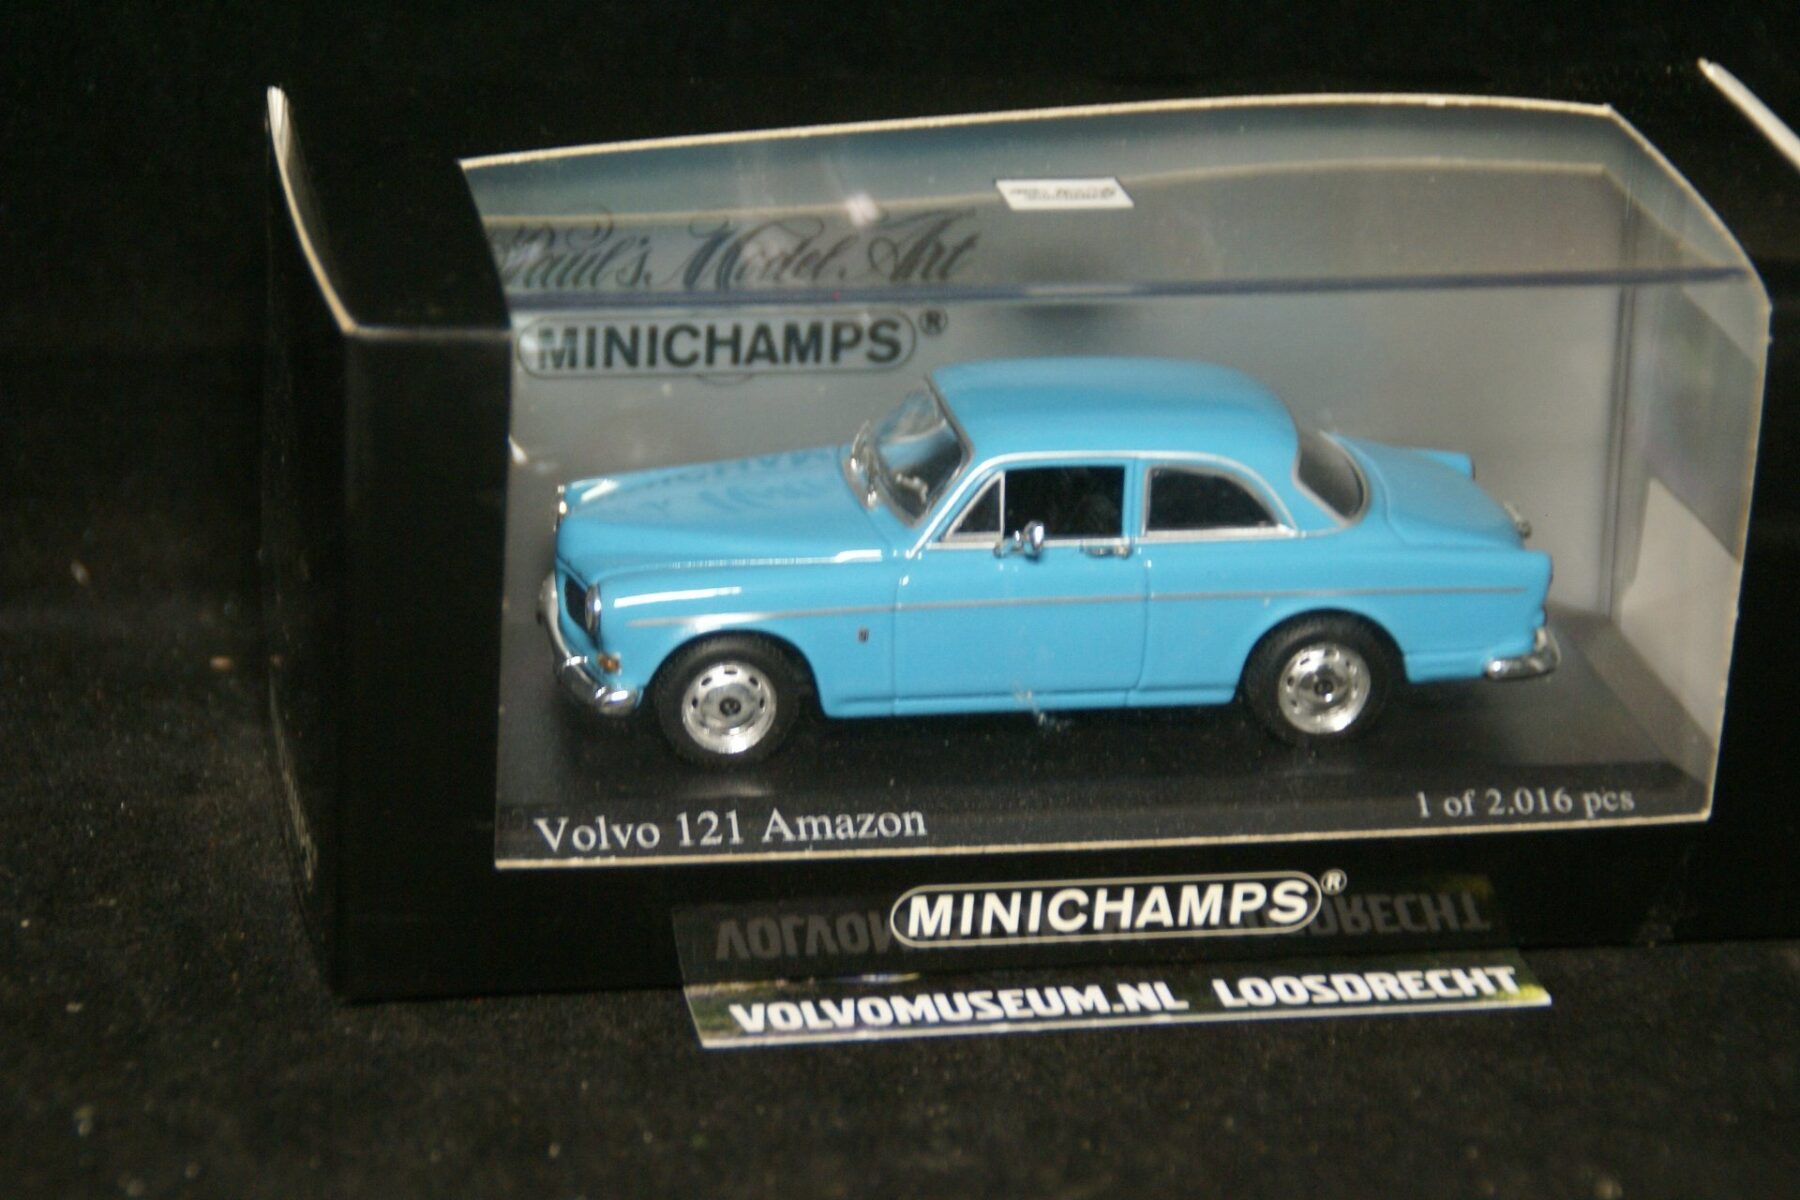 DSC03265 miniatuur 1966 Volvo Amazon 130 blauw 1op43 Minichamps 171002 1 van 2016 MB